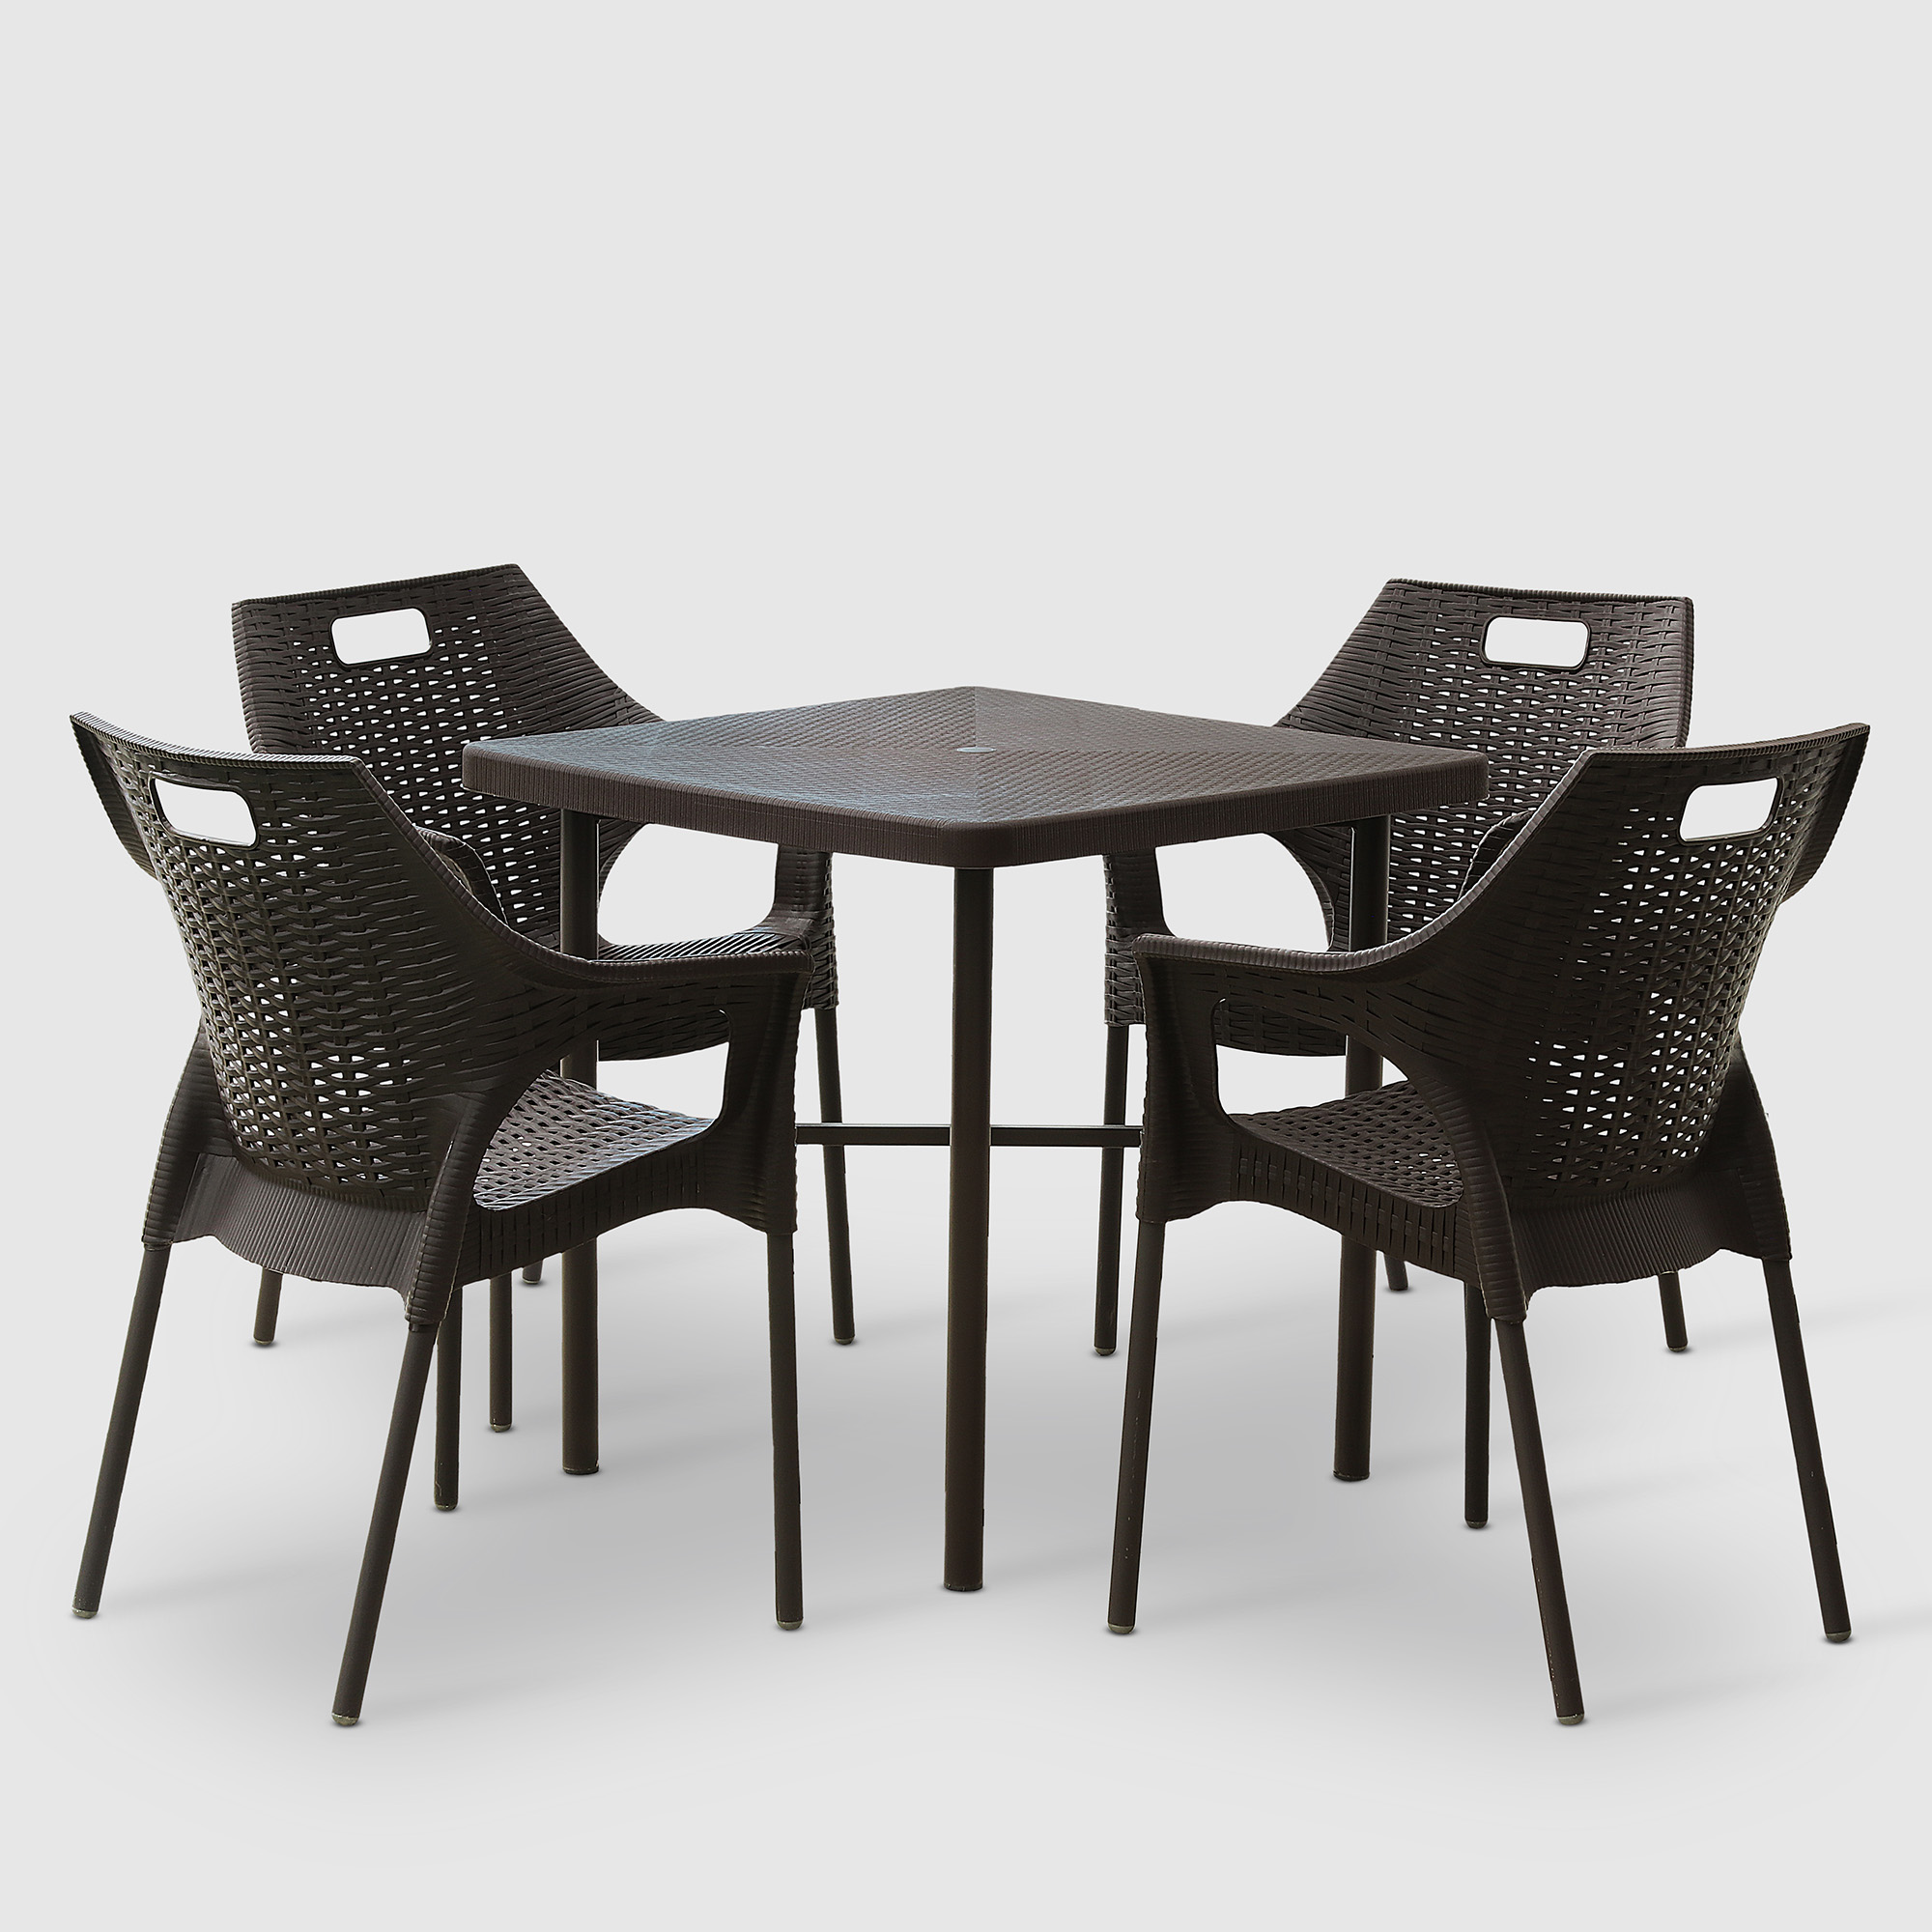 Комплект садовой мебели Mandella Zeugma and Star коричневый из 5 предметов террасный комплект стол со стеклом 2 кресла tetchair pelangi ротанг walnut грецкий орех